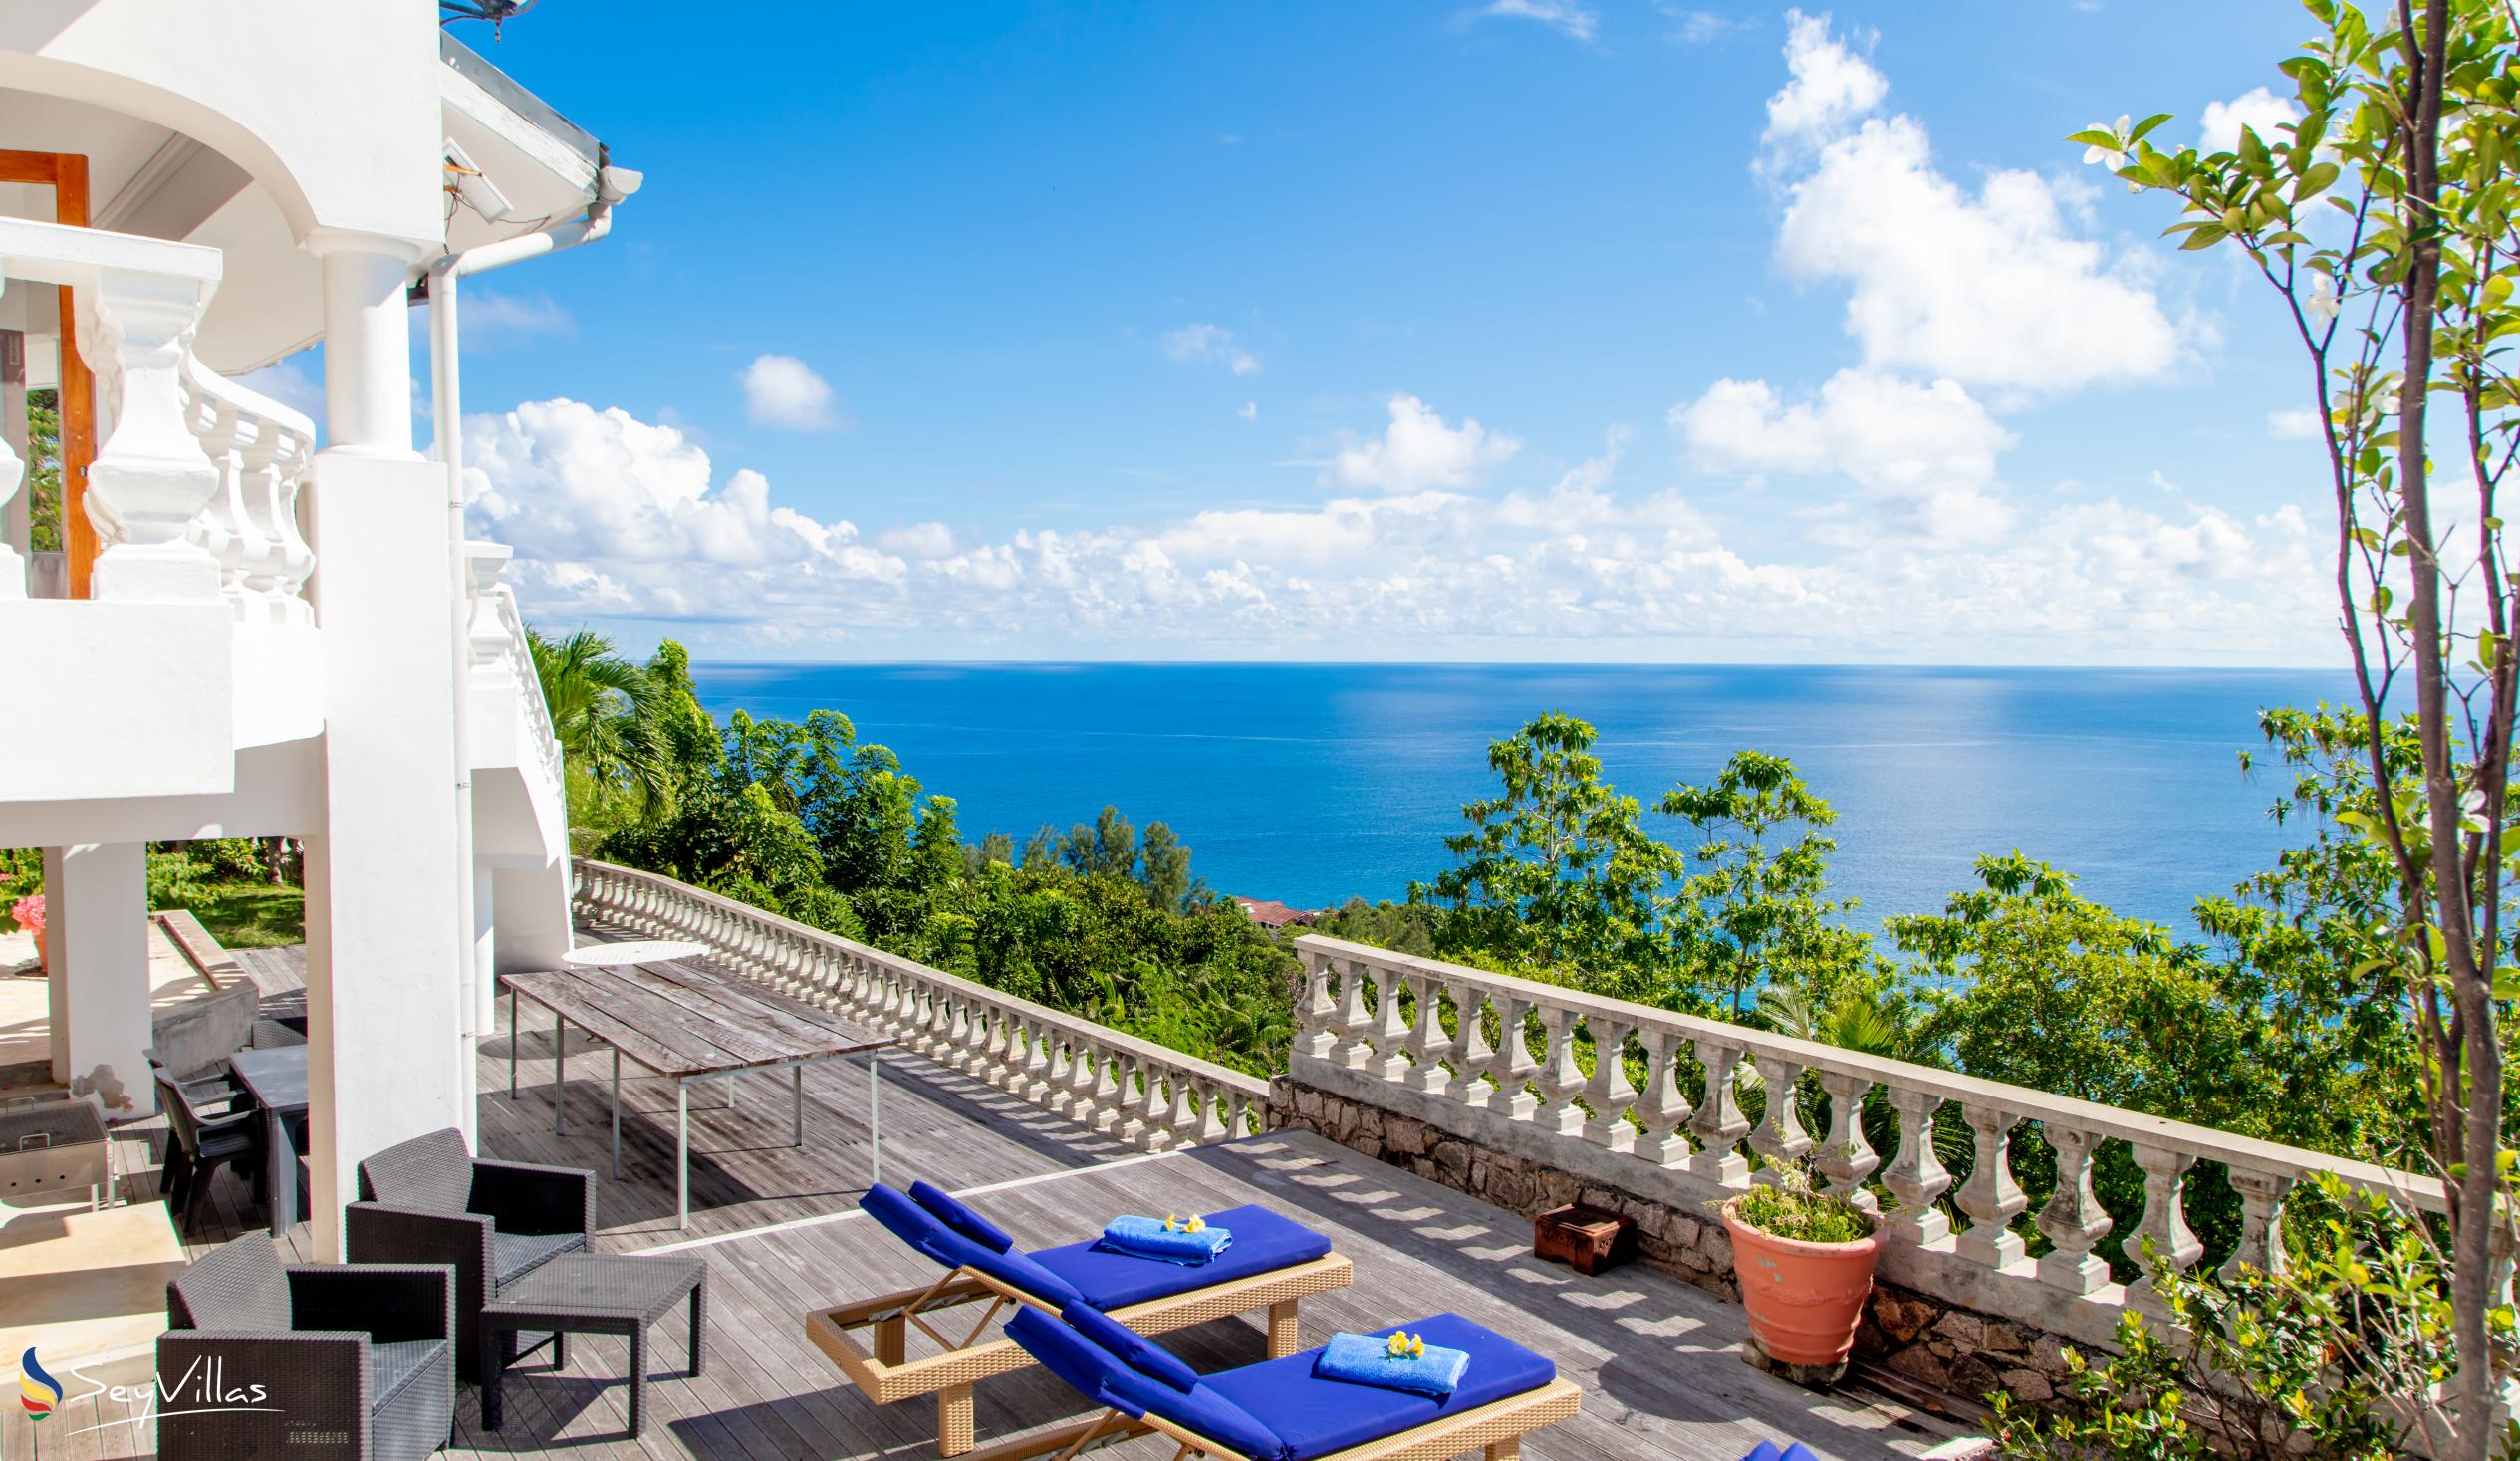 Foto 4: Blu Vista Villa - Aussenbereich - Mahé (Seychellen)